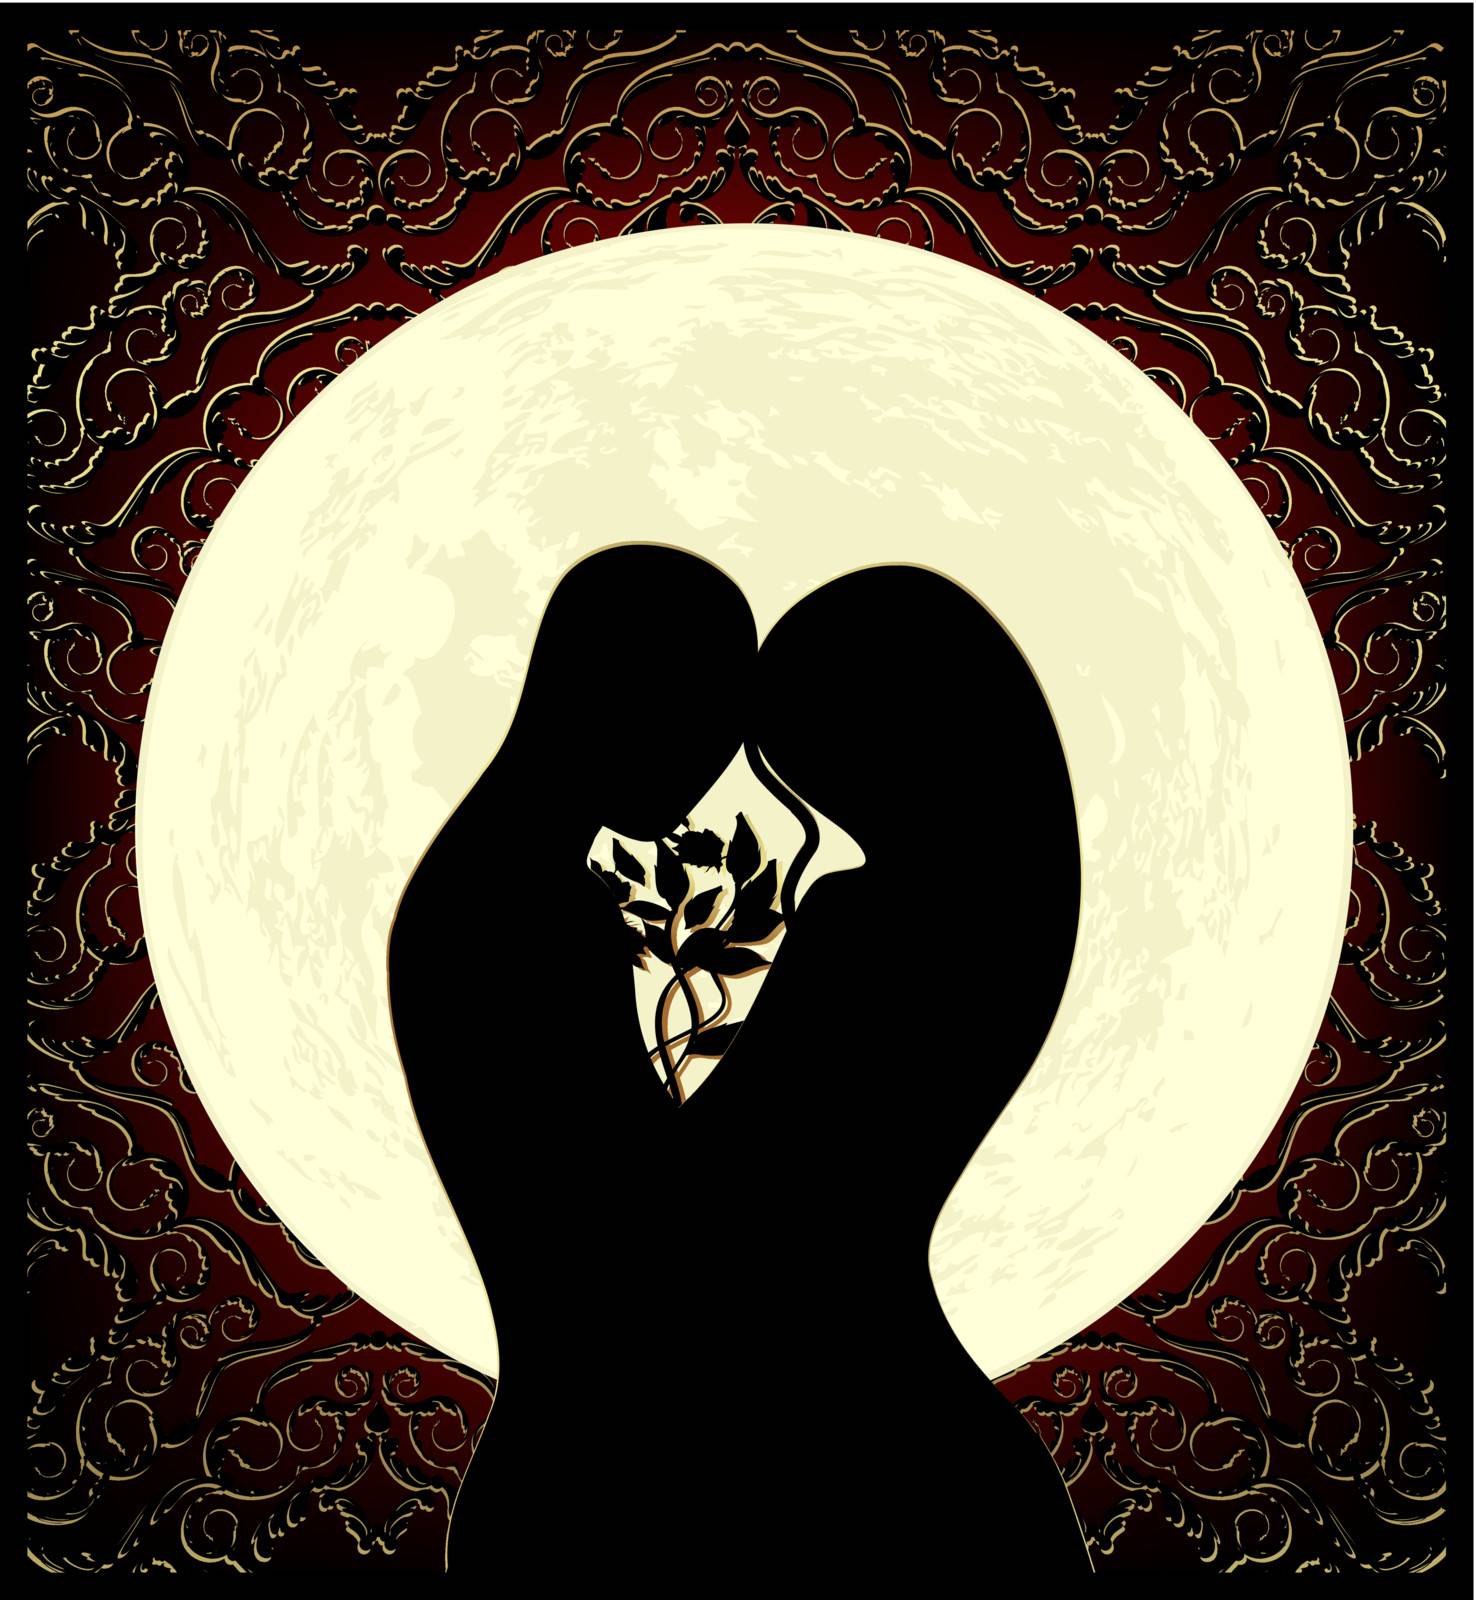 Lovers and moon by olgaaltunina